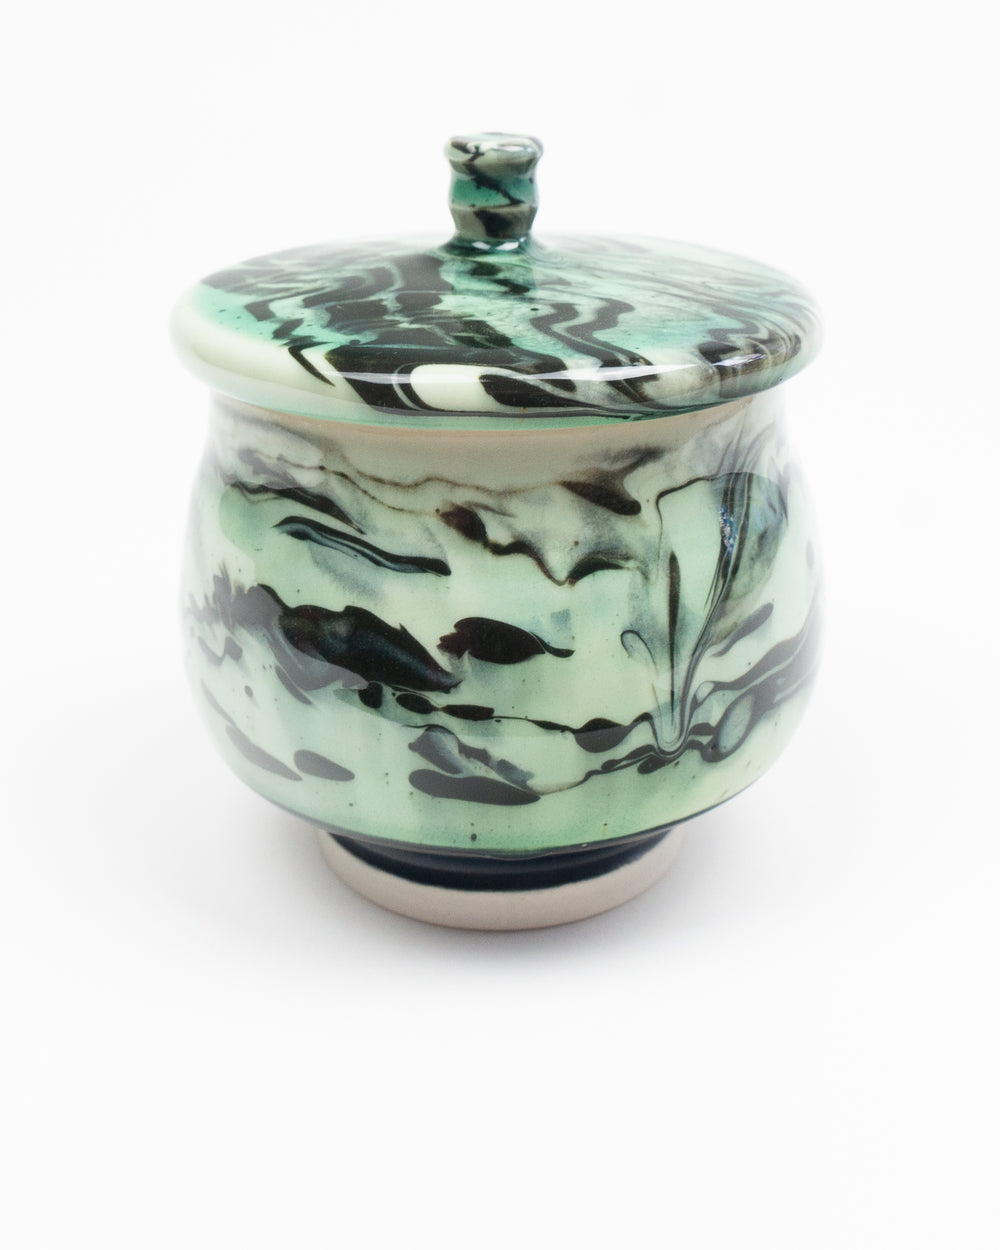 Lidded Green Marbleware Jar